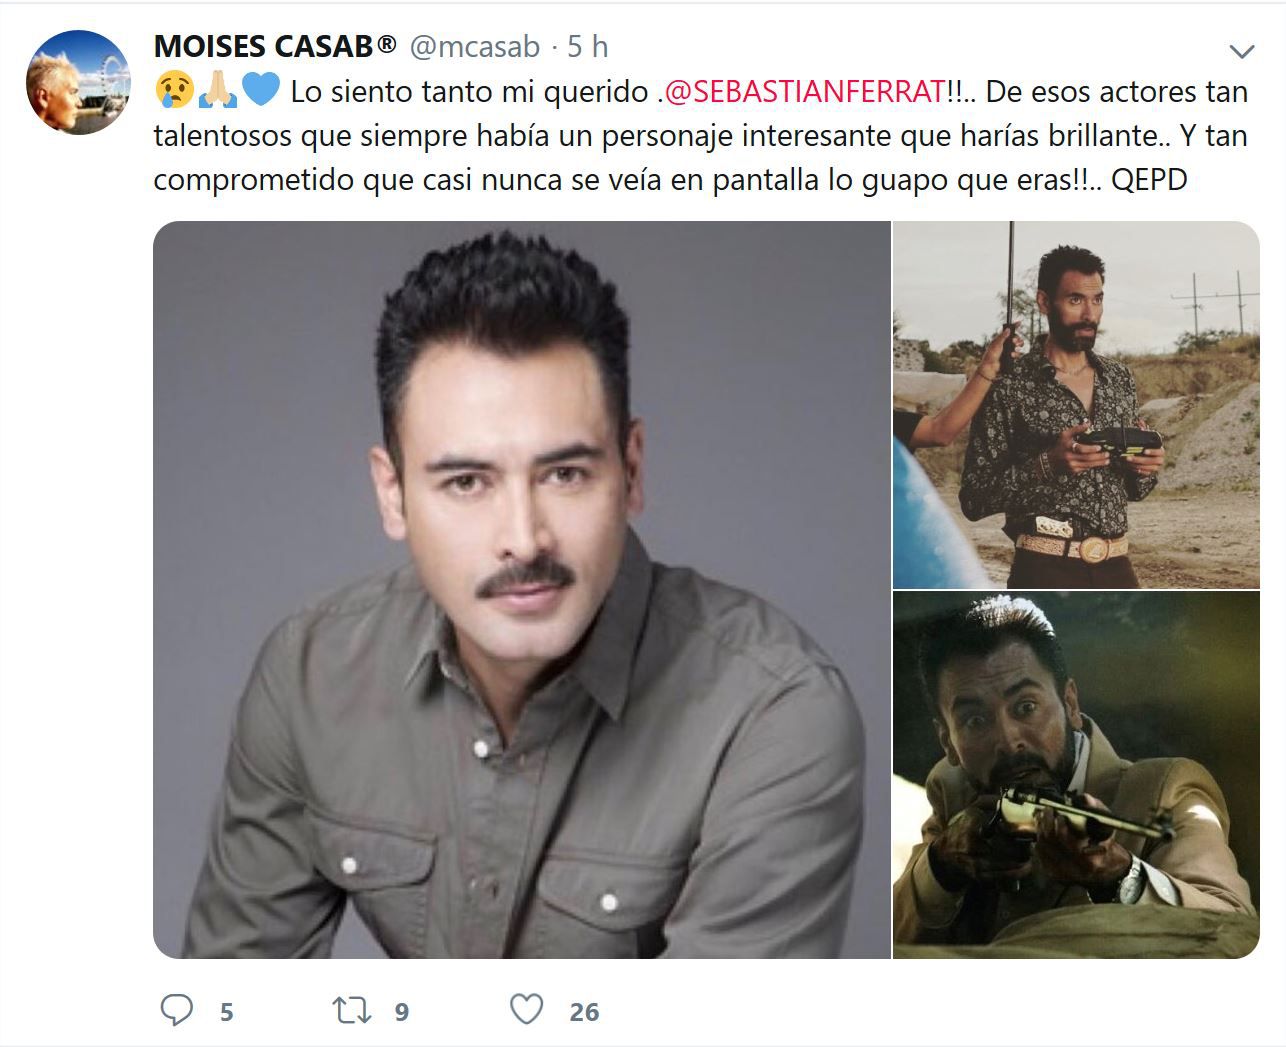 Actores, amigos y compañeros de Sebastián Ferrat, se despiden con tristeza de él y agradecen todo lo compartido y aprendido a su lado (Foto: Twitter)